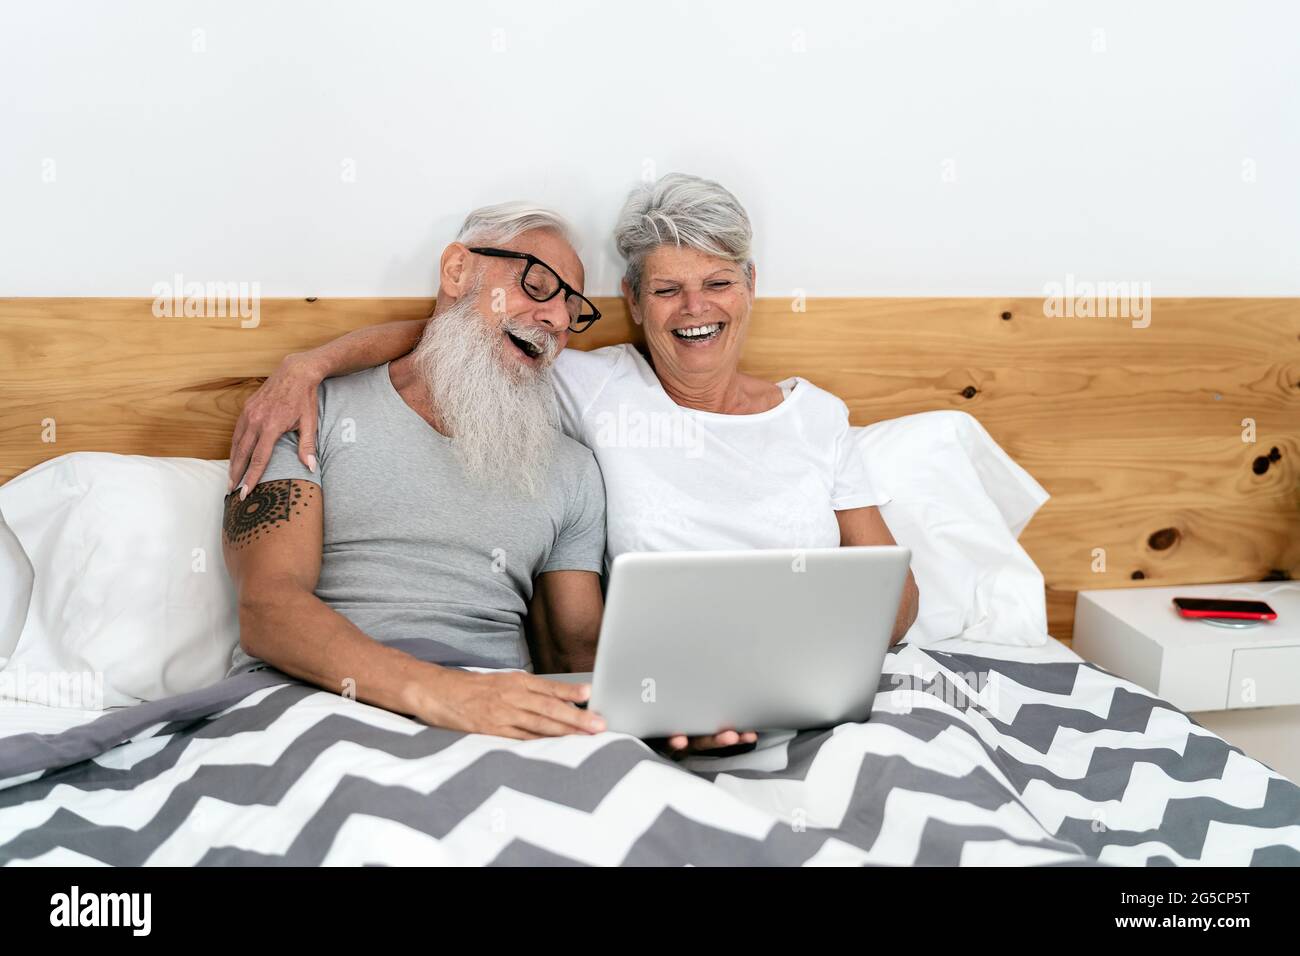 Glückliches Seniorenpaar, das Spaß daran hat, einen Laptop im Bett zu sehen - Technik und Lifestyle-Konzept für ältere Menschen Stockfoto